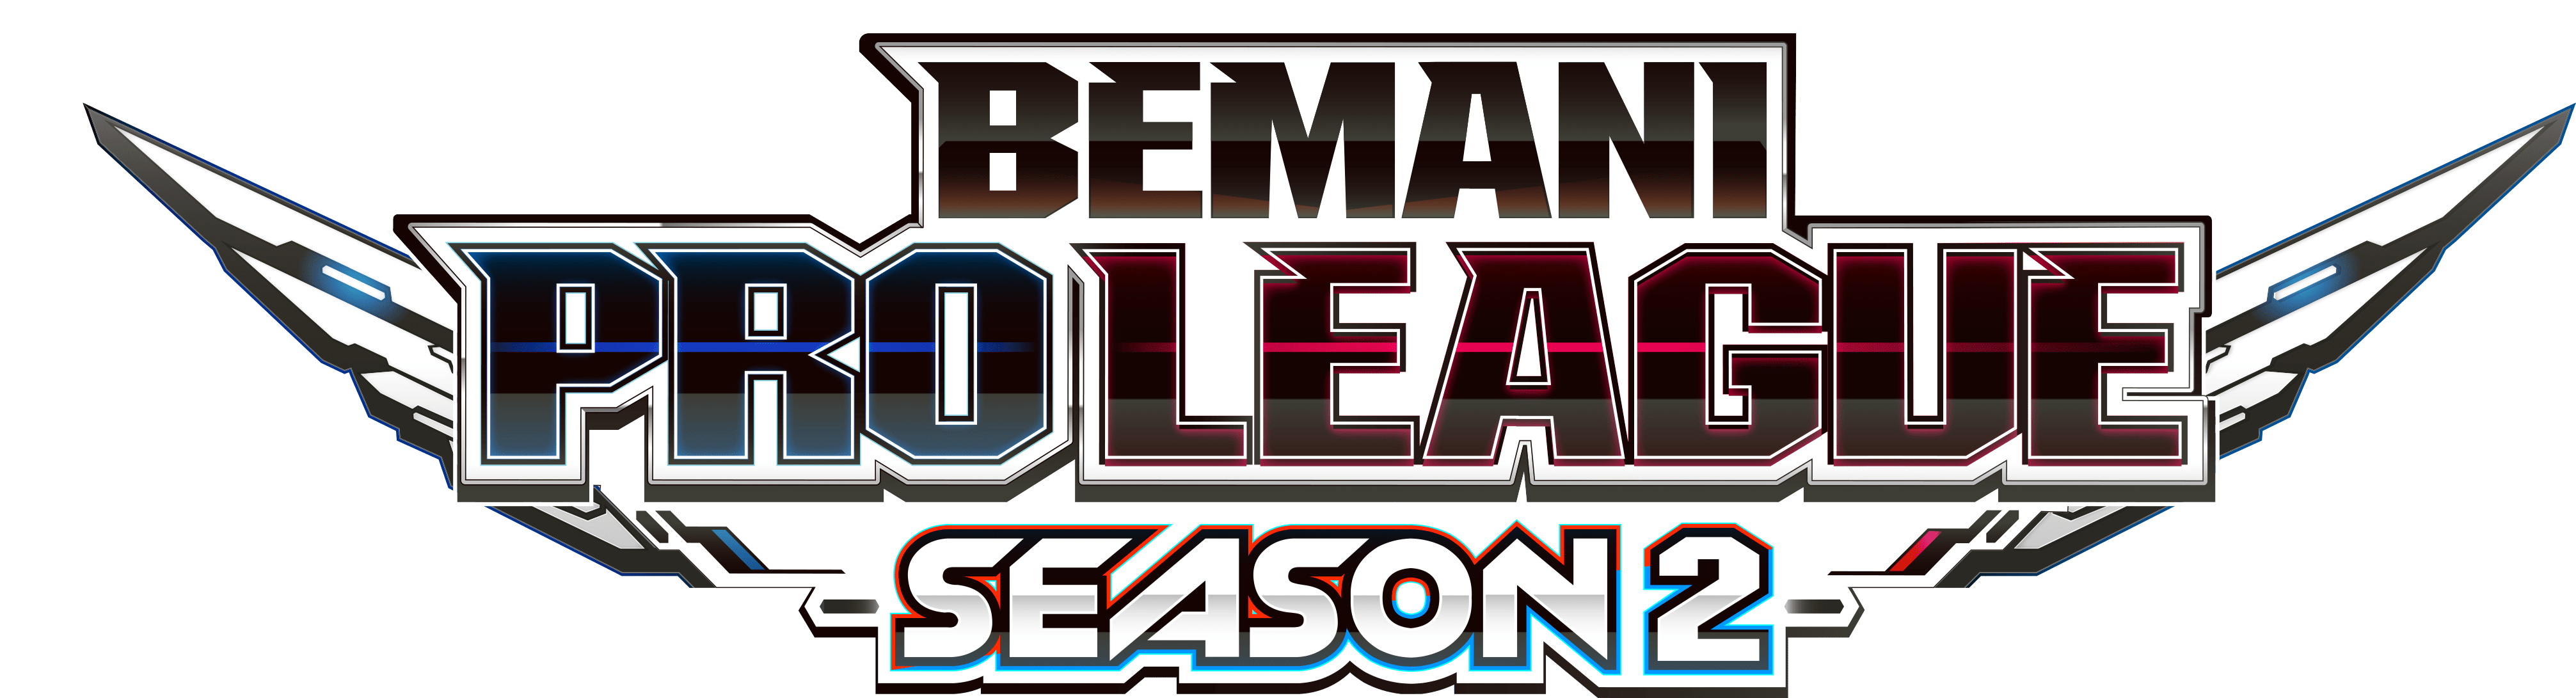 【大会情報】BEMANI PRO LEAGUE SEASON2 レギュラーステージ 第9、10試合【2022年7月27日】